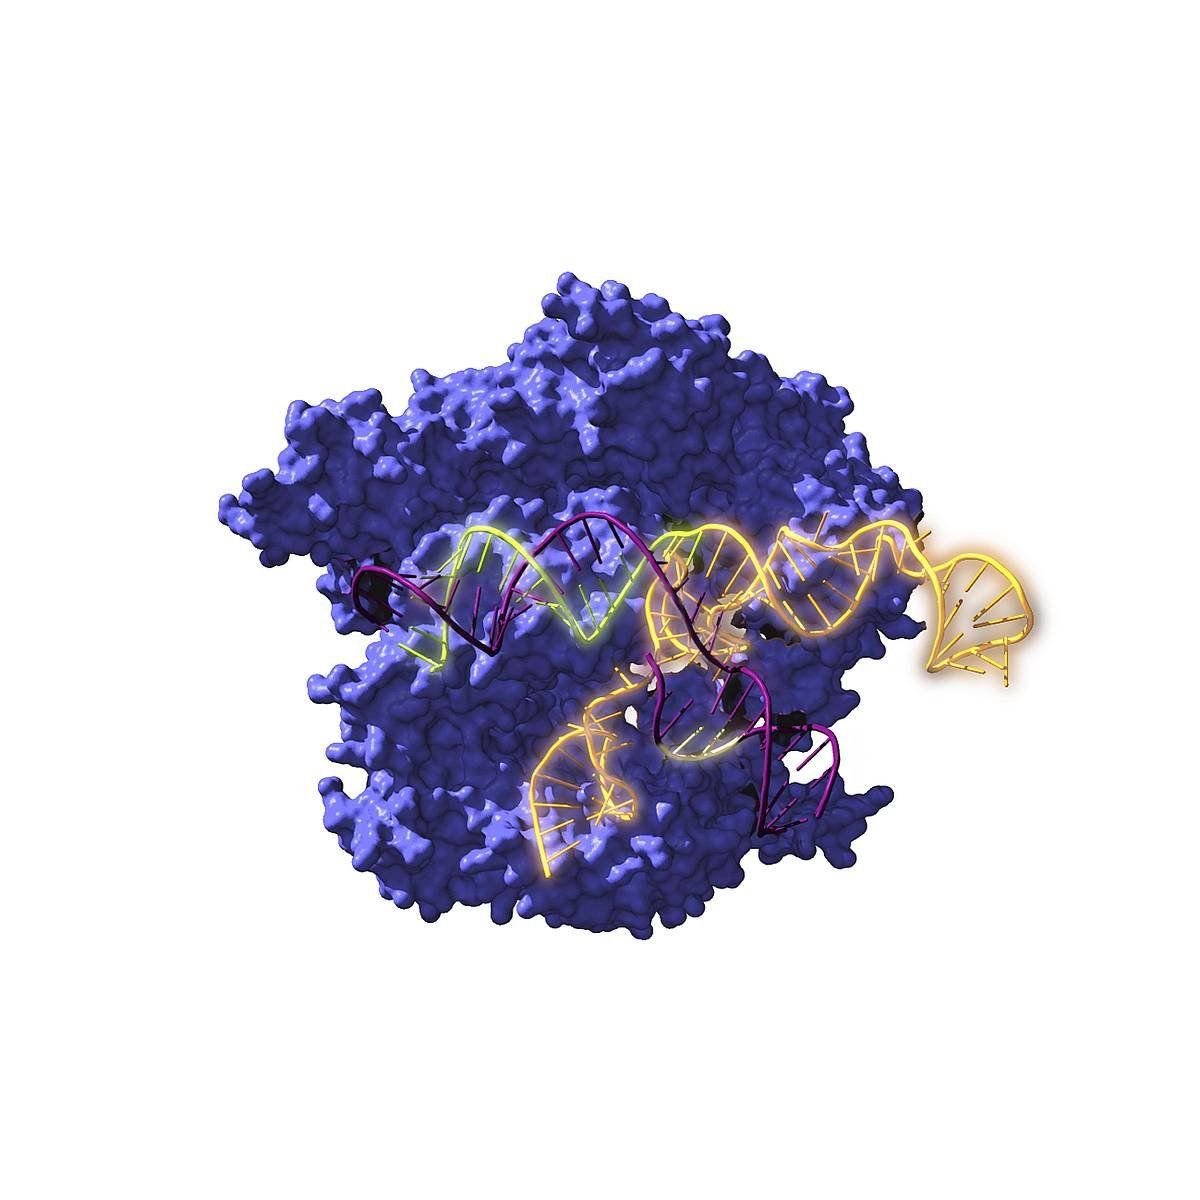 Cas9 entzima endonukleasa DNA objektiboaren gainean jarduten. ANTONIO REIFS / CIC NANOGUNE